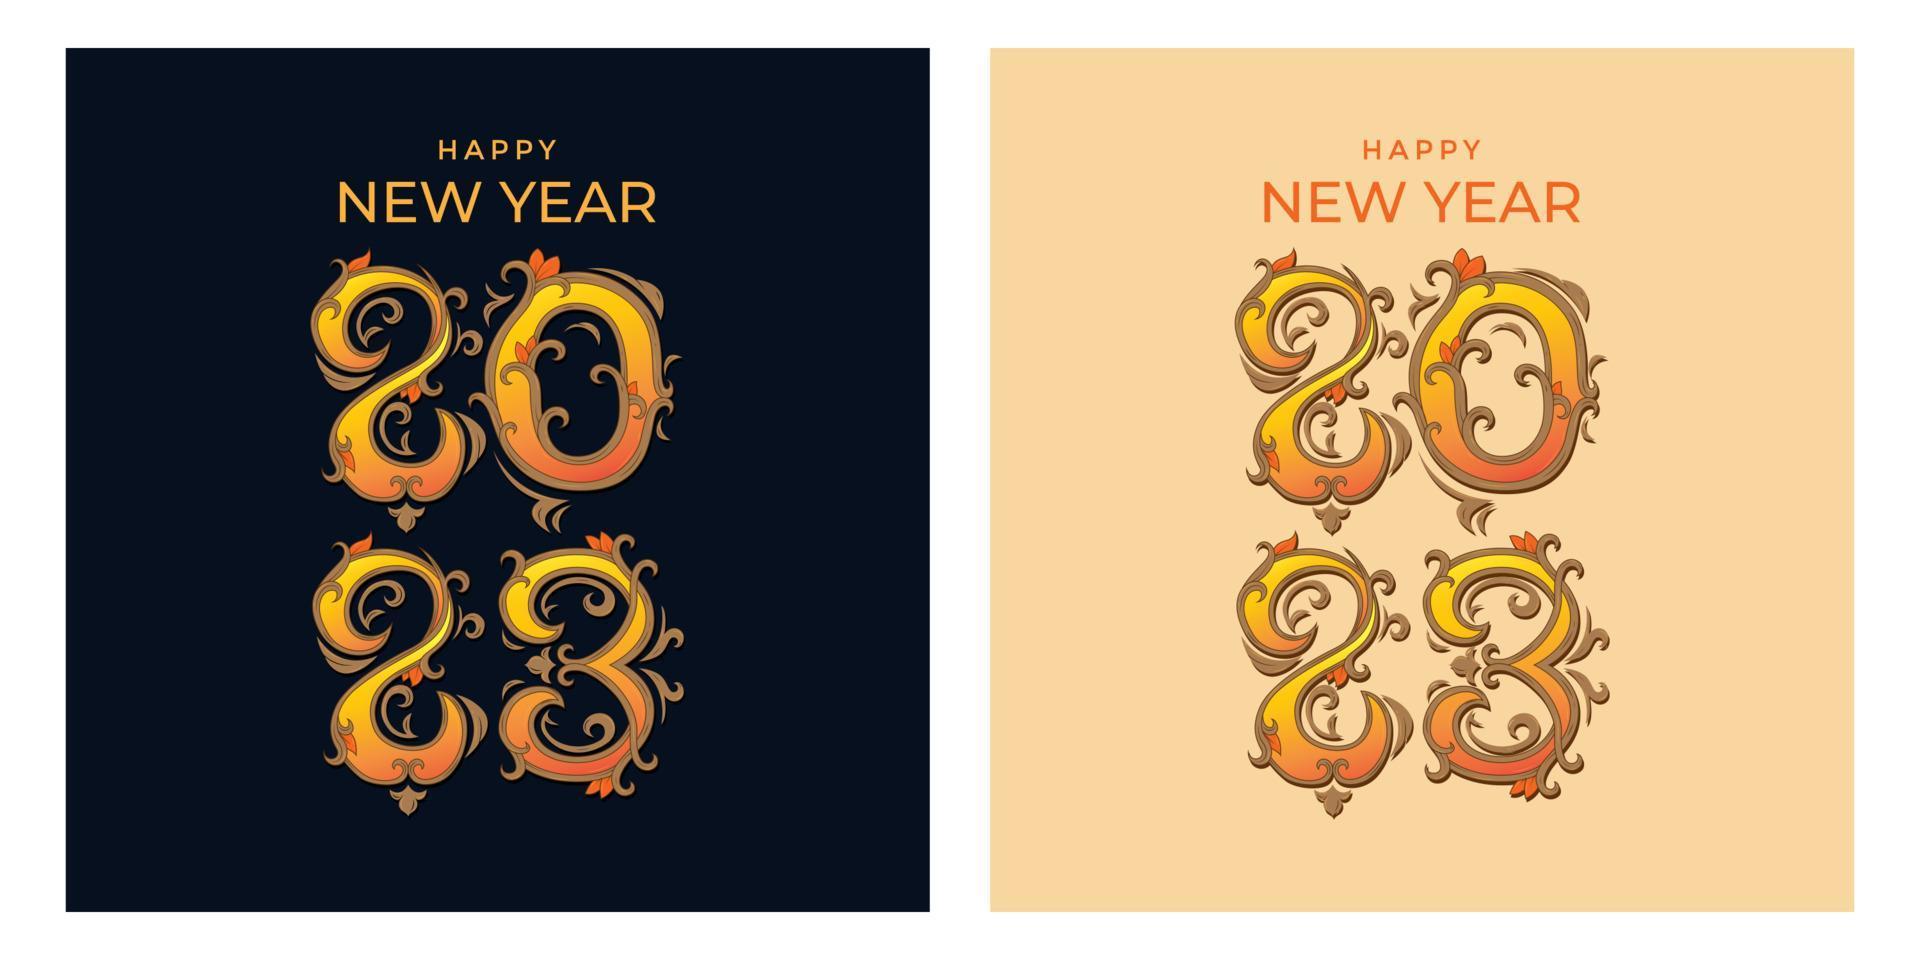 feliz año nuevo 2023 tipografía y letras a mano con diseño de adorno floral para publicación en redes sociales vector